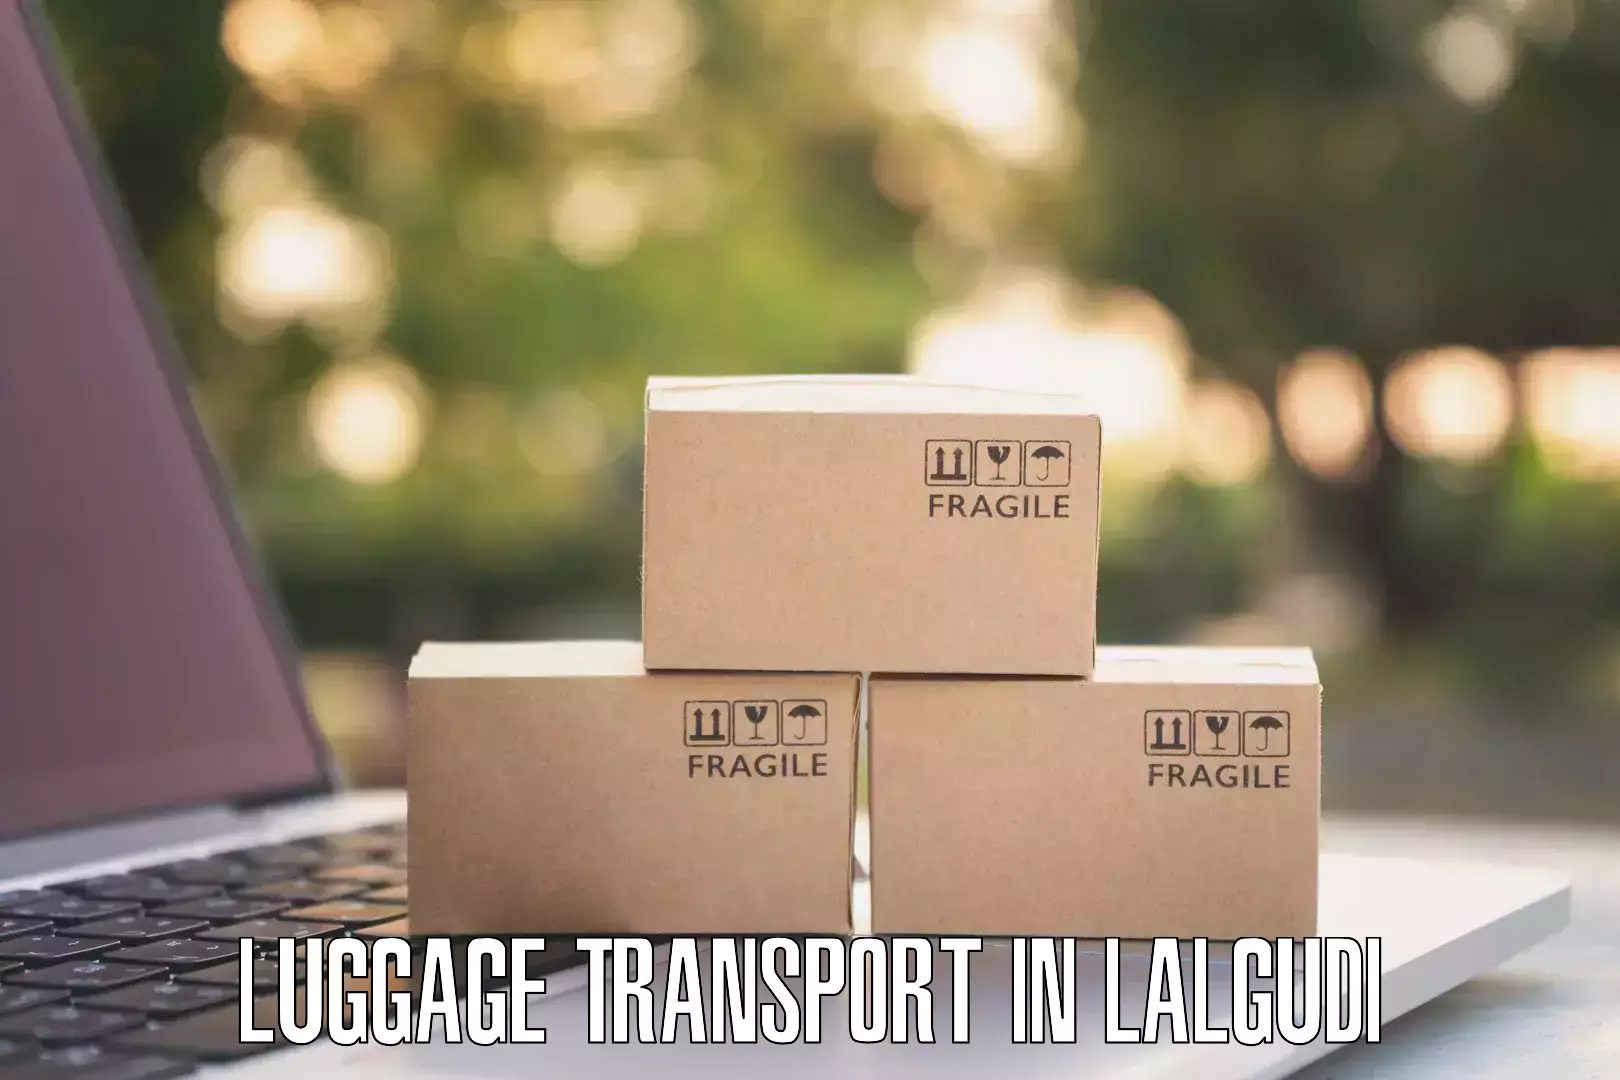 Luggage transfer service in Lalgudi